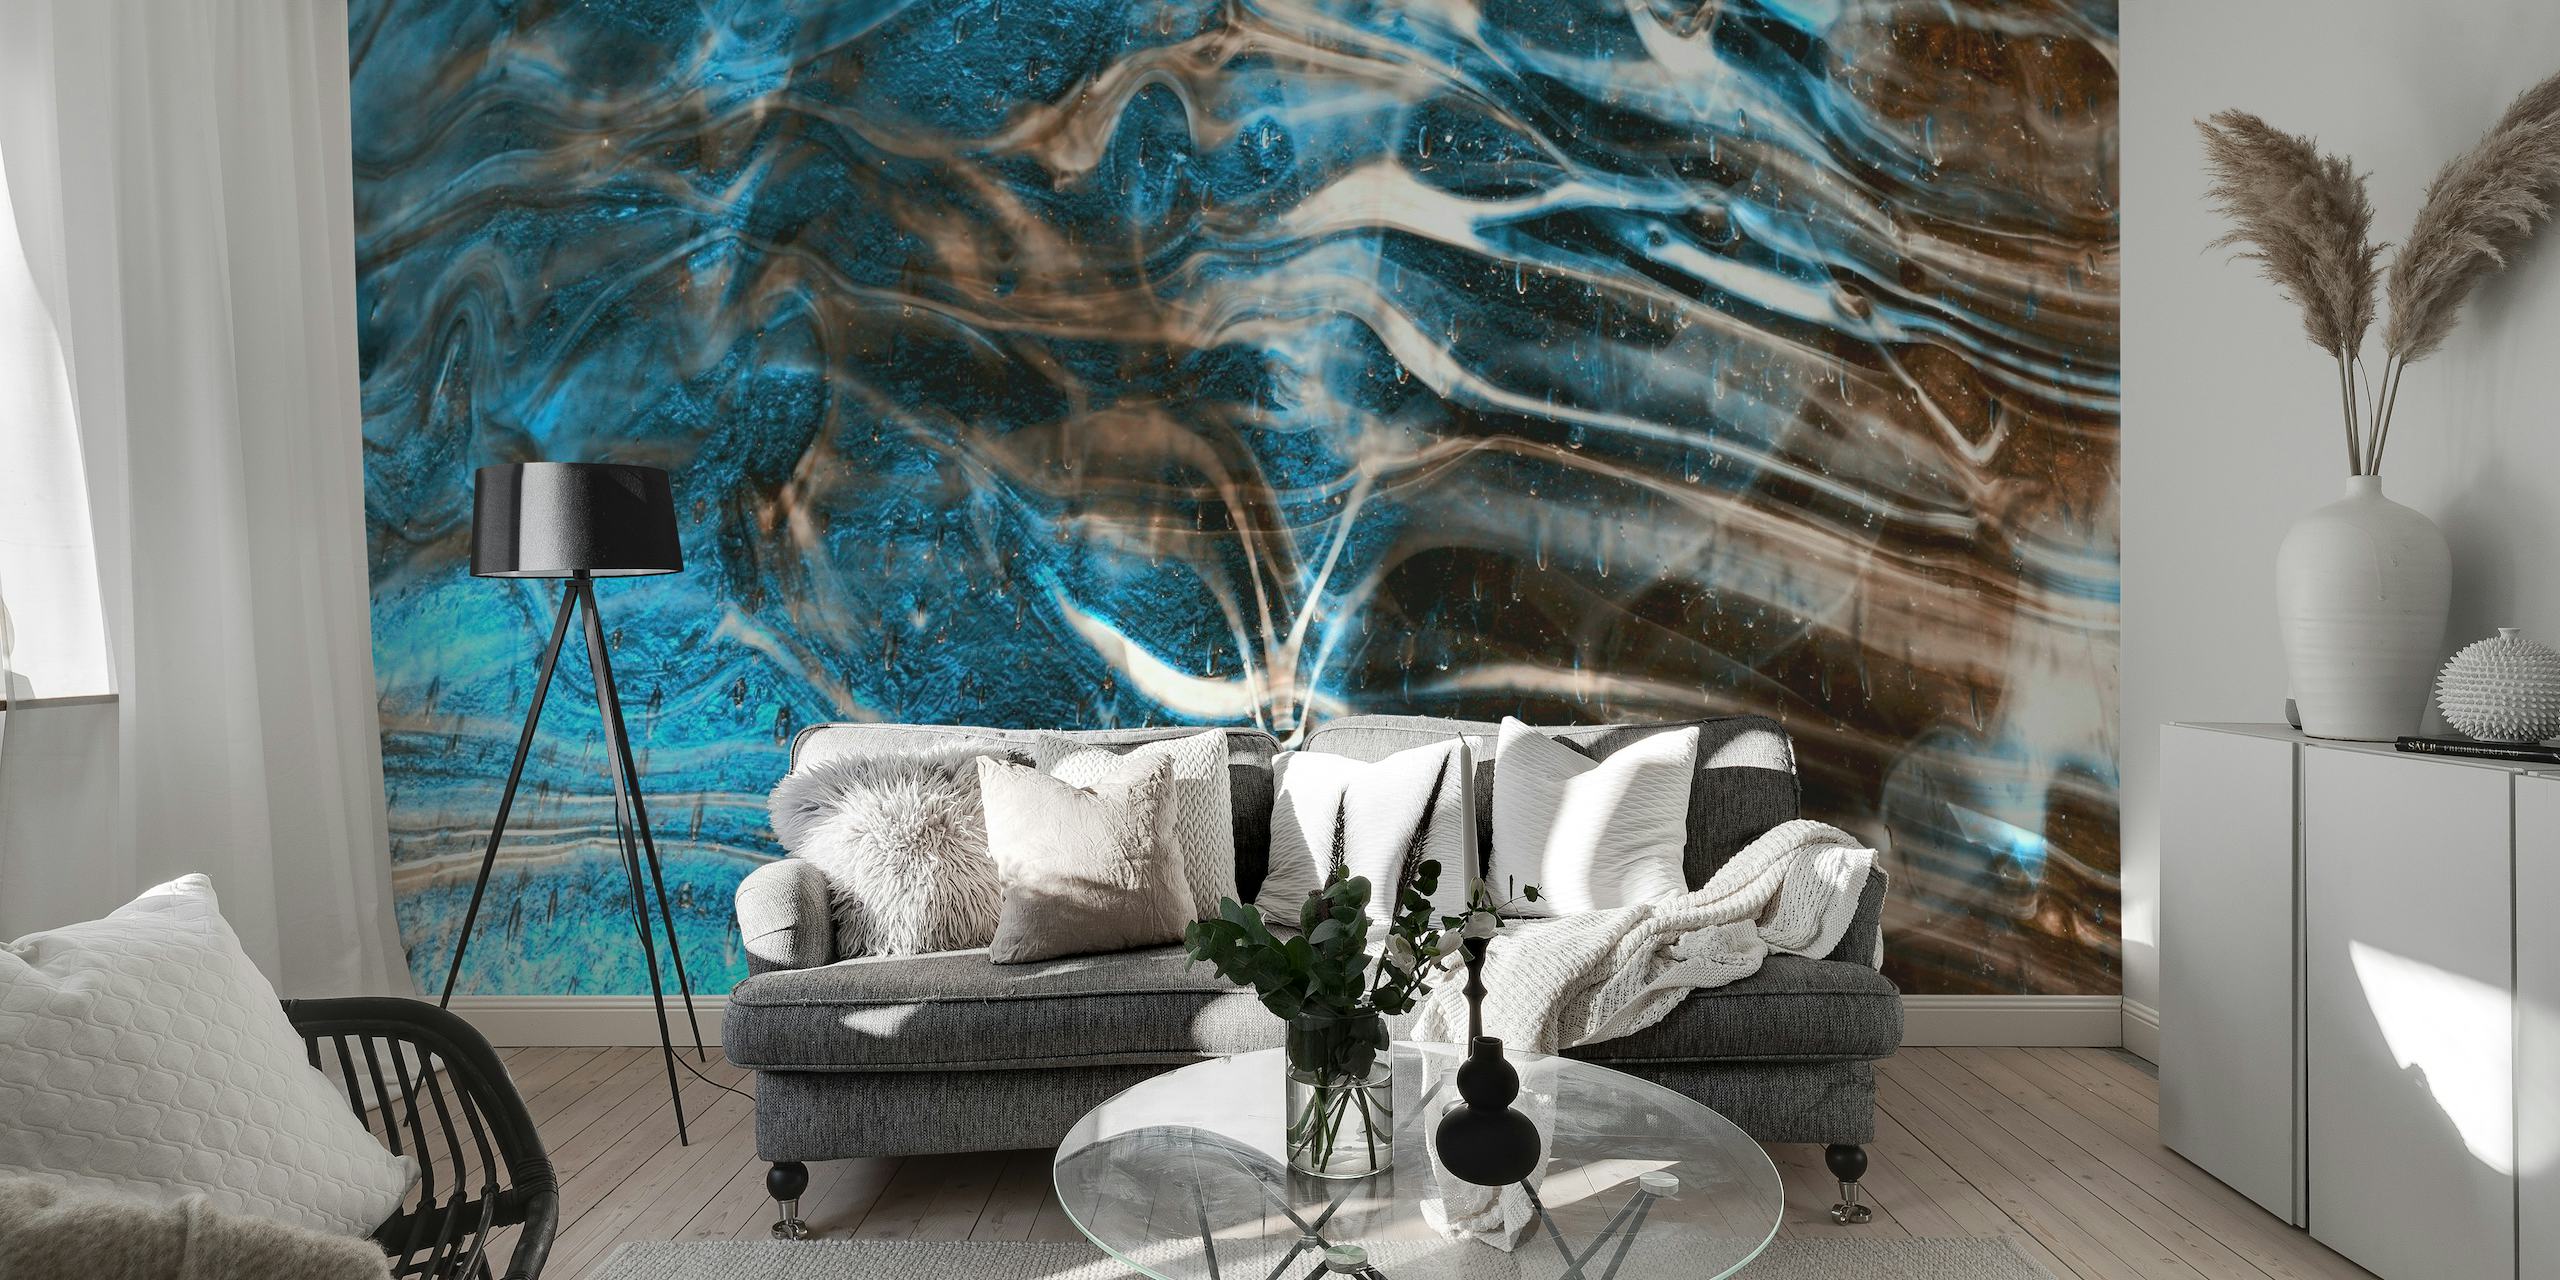 Muurschildering met blauw en bruin marmerpatroon voor een rustgevende sfeer in de kamer